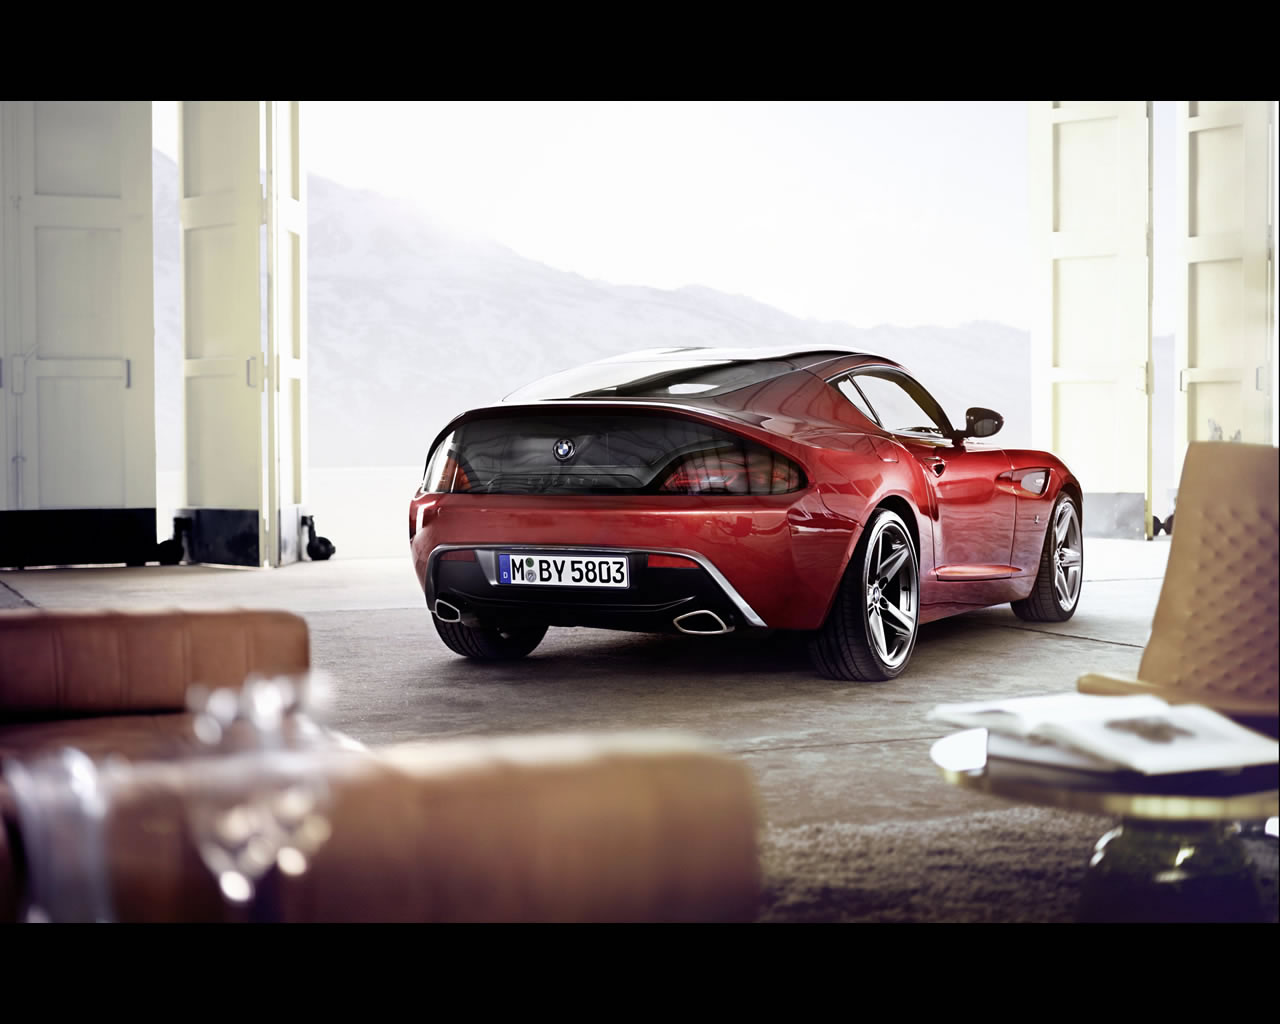 2012 BMW Zagato Coupe Concept